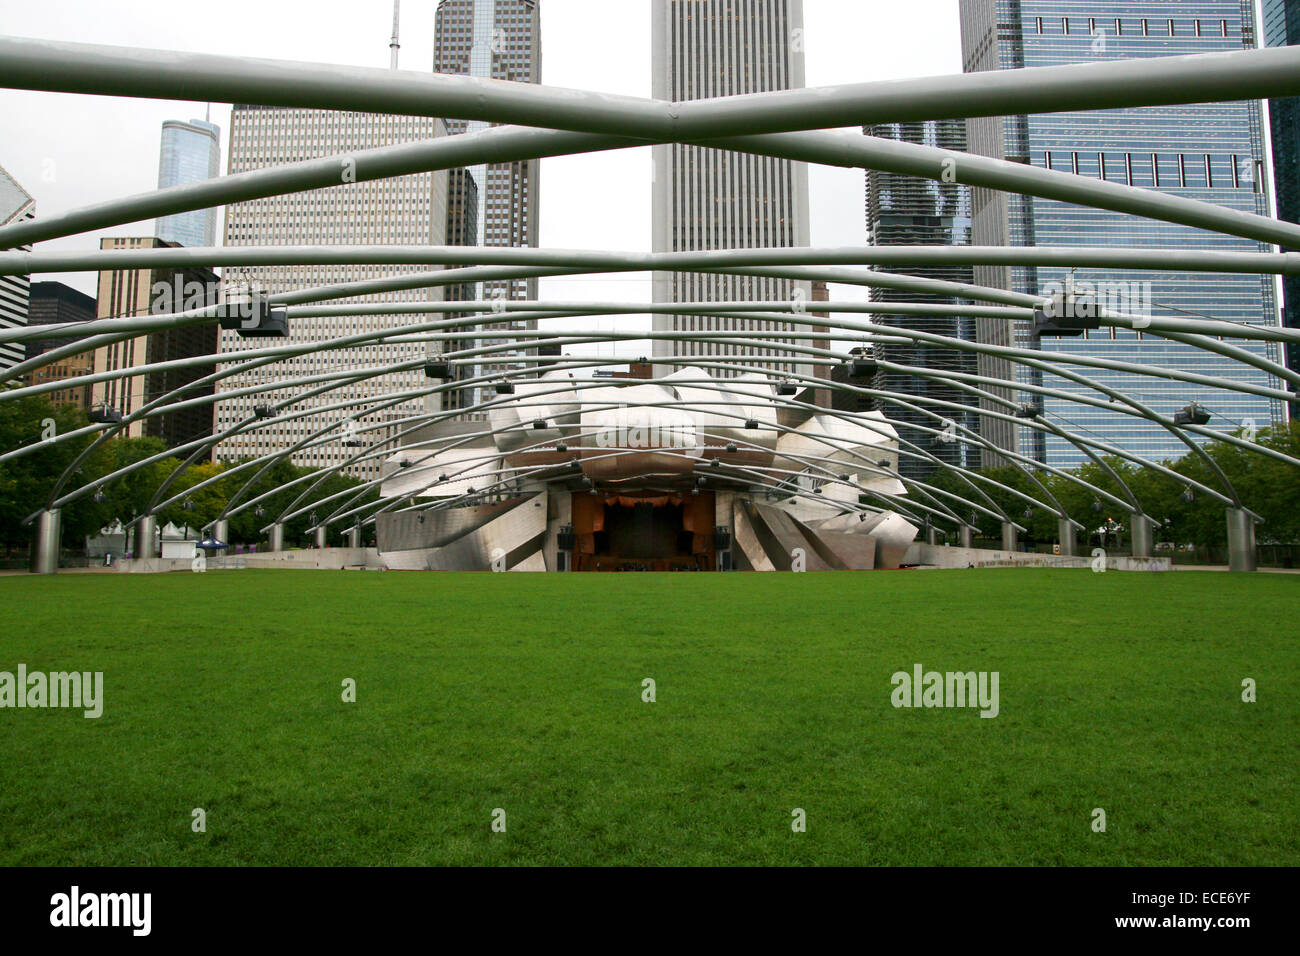 Jay Pritzker Pavillion Millenium Park Architektur blau buero chicago stadt ciudad amerika american Aussergewoehnlich Symmetrisch K Foto de stock